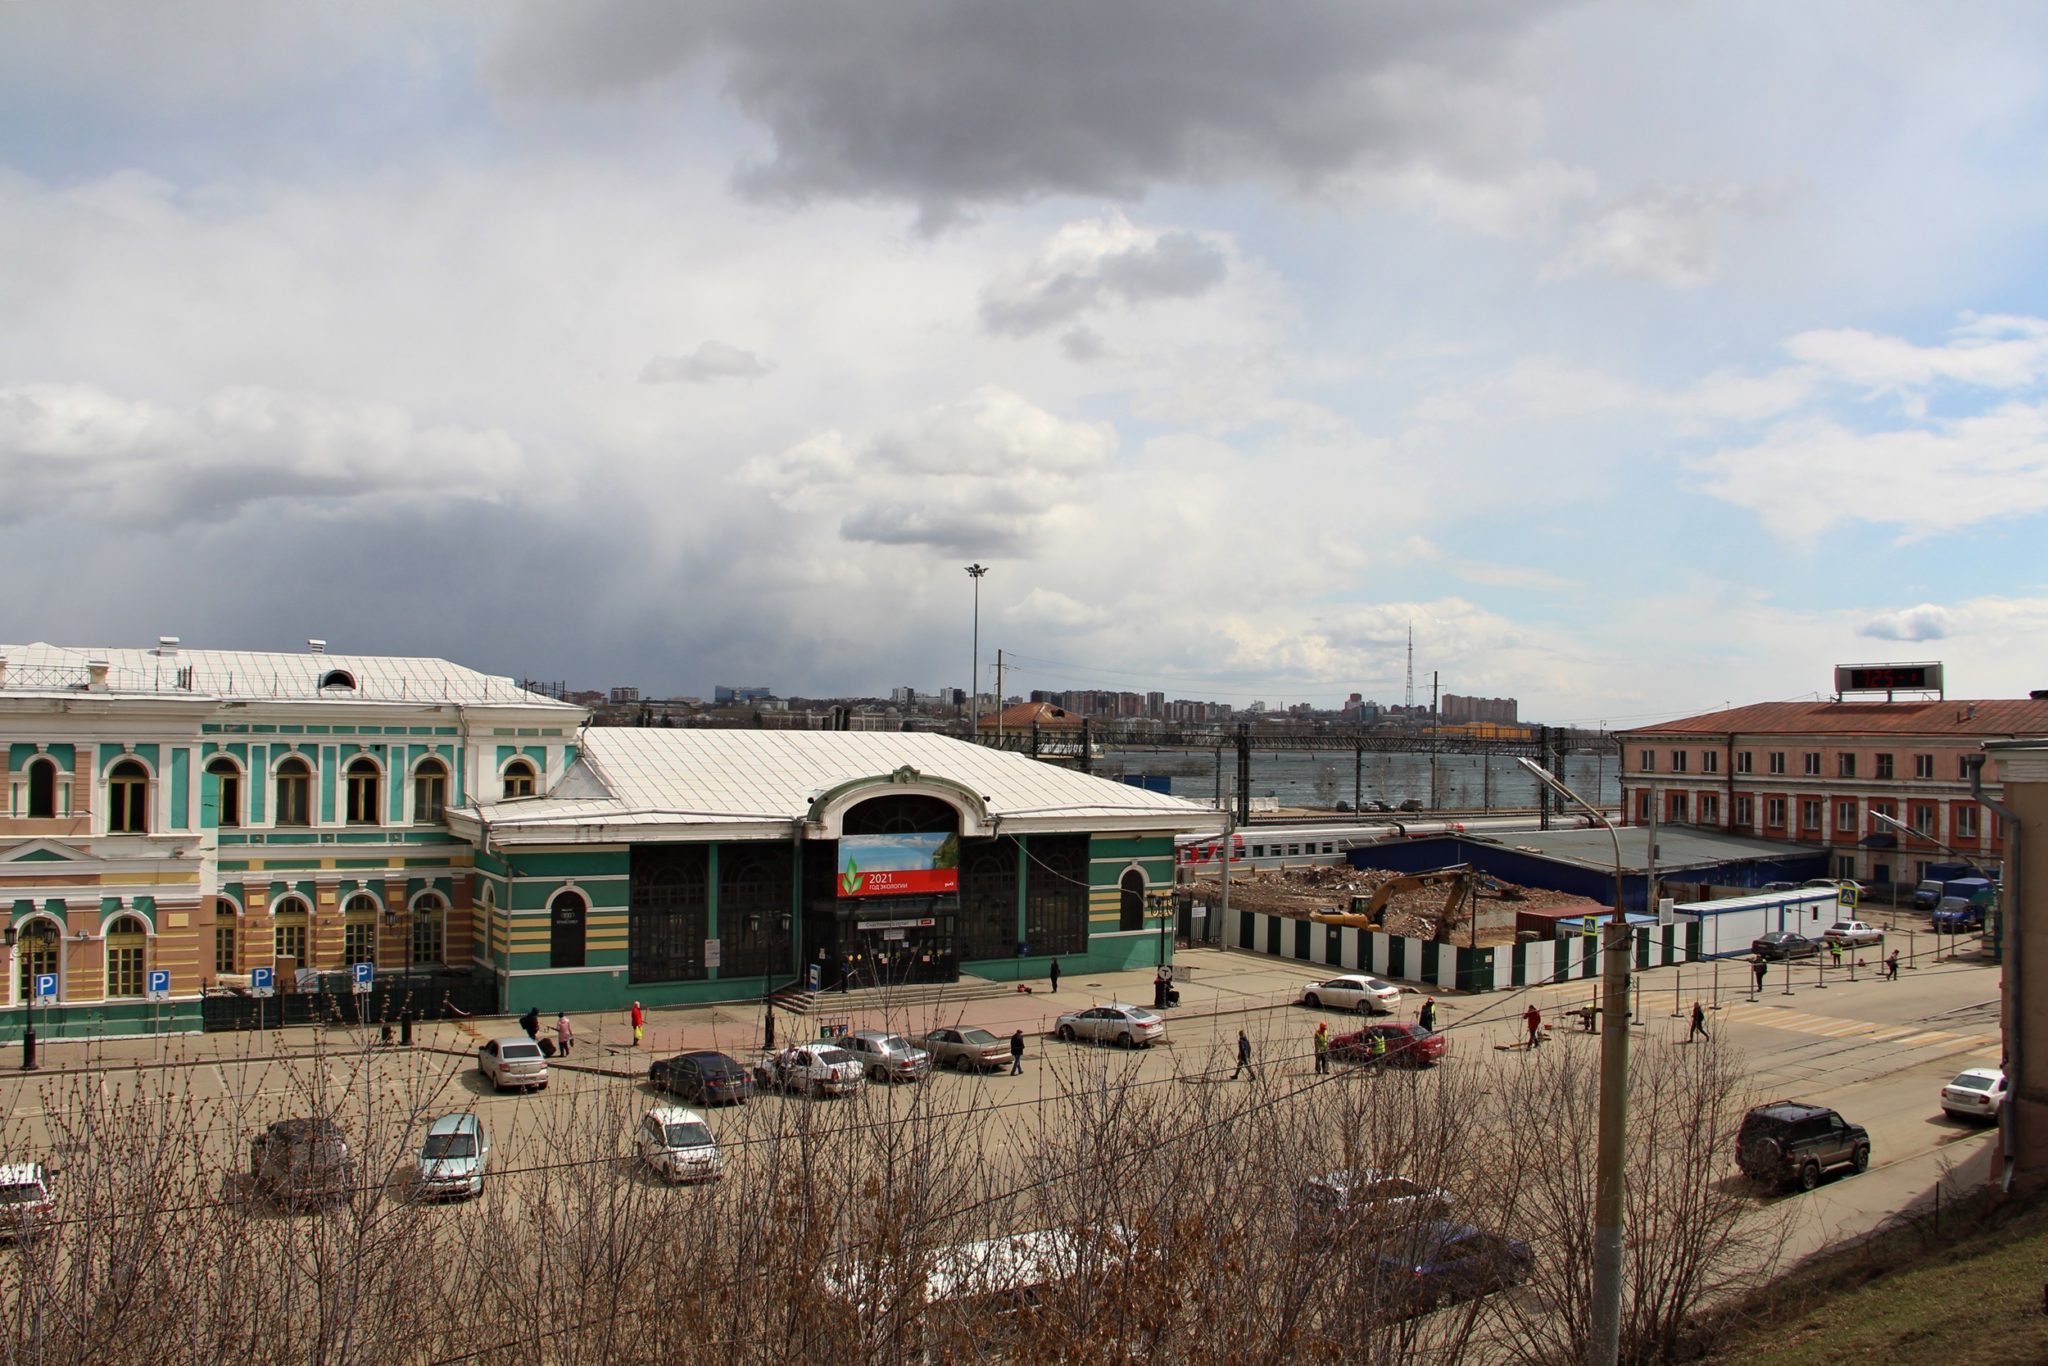 Иркутский вокзал фото